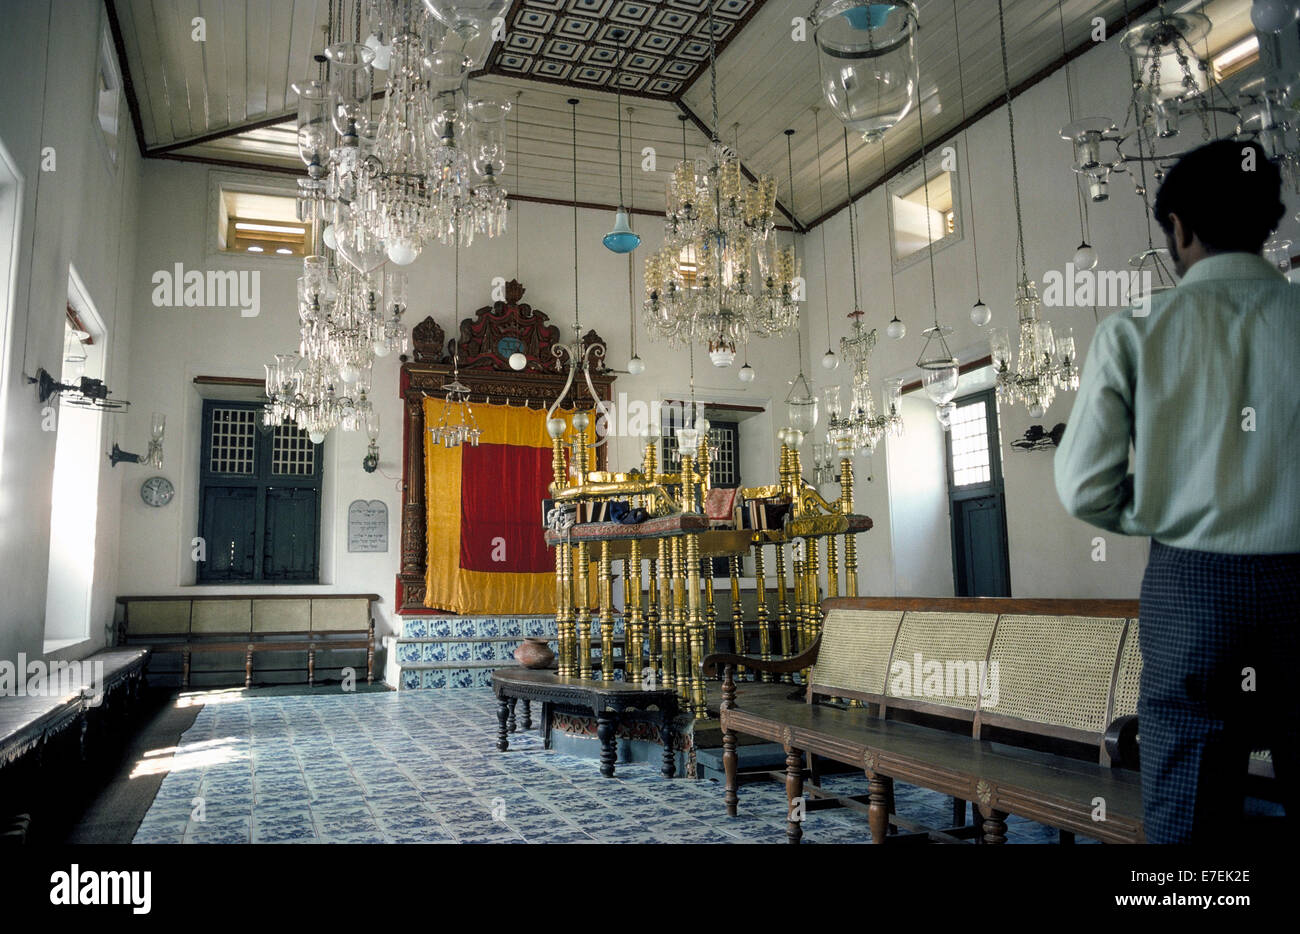 La Synagogue Paradesi a été construit en 1568 pour la communauté juive de Kochi (Cochin) dans l'état du Kerala, en Inde, est l'une des plus anciennes synagogues fonctionnent dans le monde. Les visiteurs sont les bienvenus pour voir ses trésors historiques qui incluent une arche en teck (derrière le rideau rouge et or] avec morte de la Torah et des couronnes d'or et d'argent. En vue ouverte sont la chaire sur les rails en laiton, 18ème siècle carreaux bleu de Chine, des lustres et des lampes en verre et importés dans les années 1800 à partir de l'Europe. Photographié en 1974. Banque D'Images